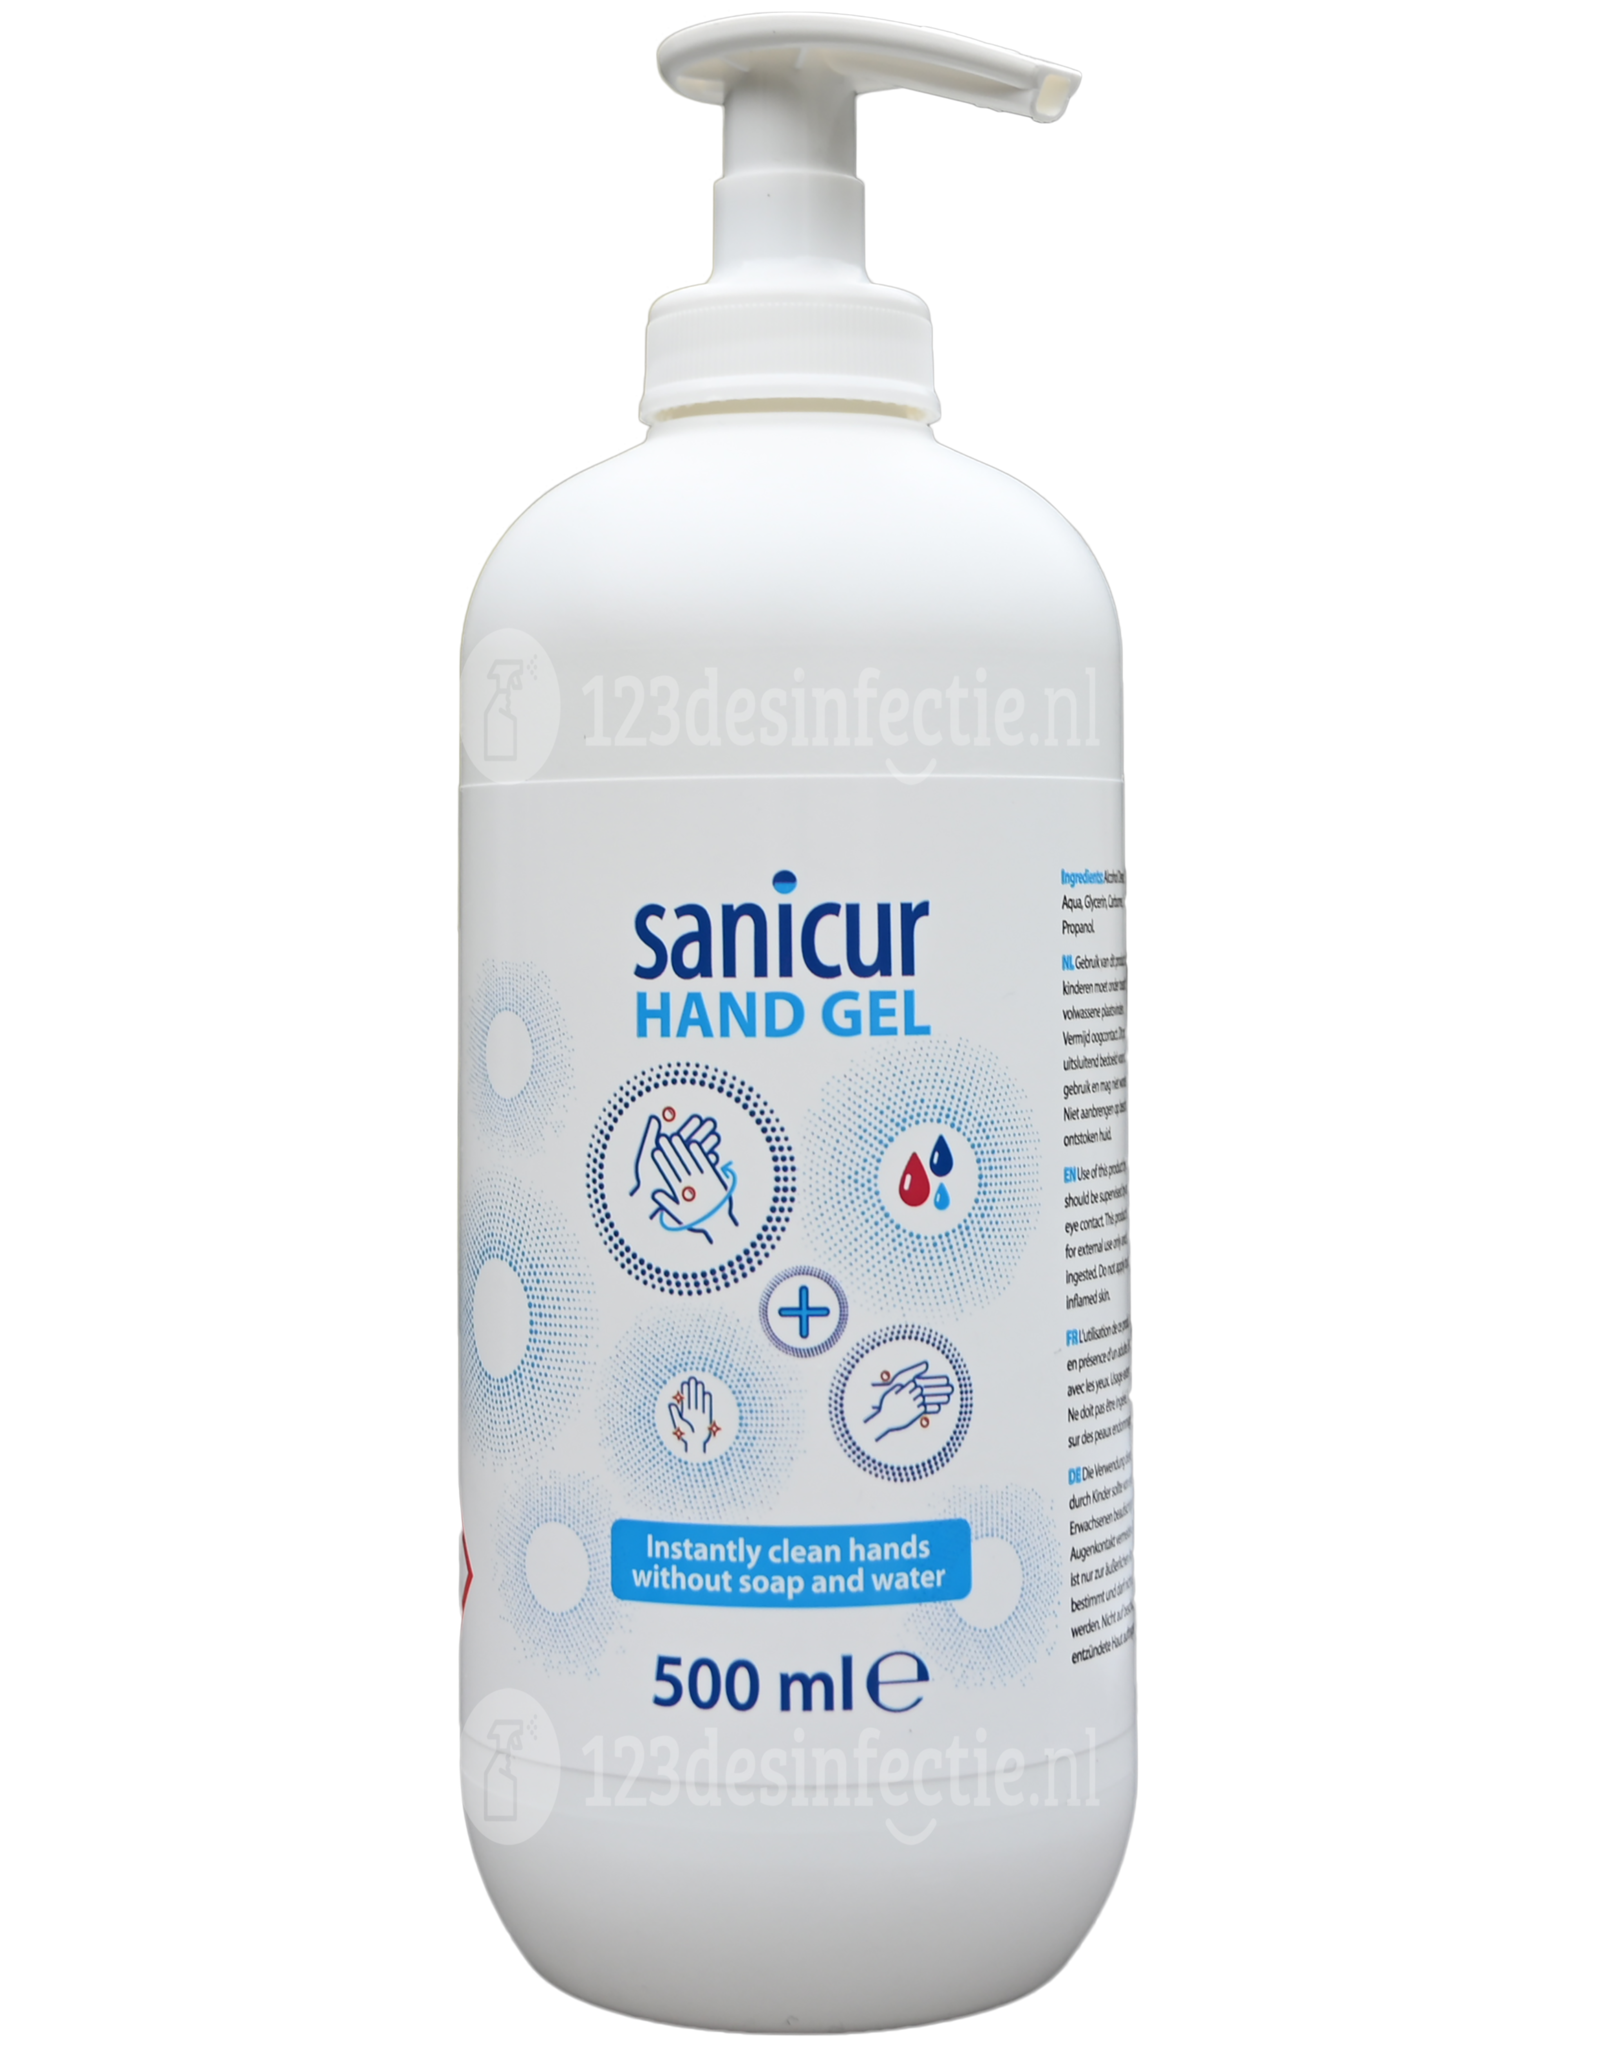 Sanicur Handgel 15x 500ml antibacterieel 123desinfectie.nl